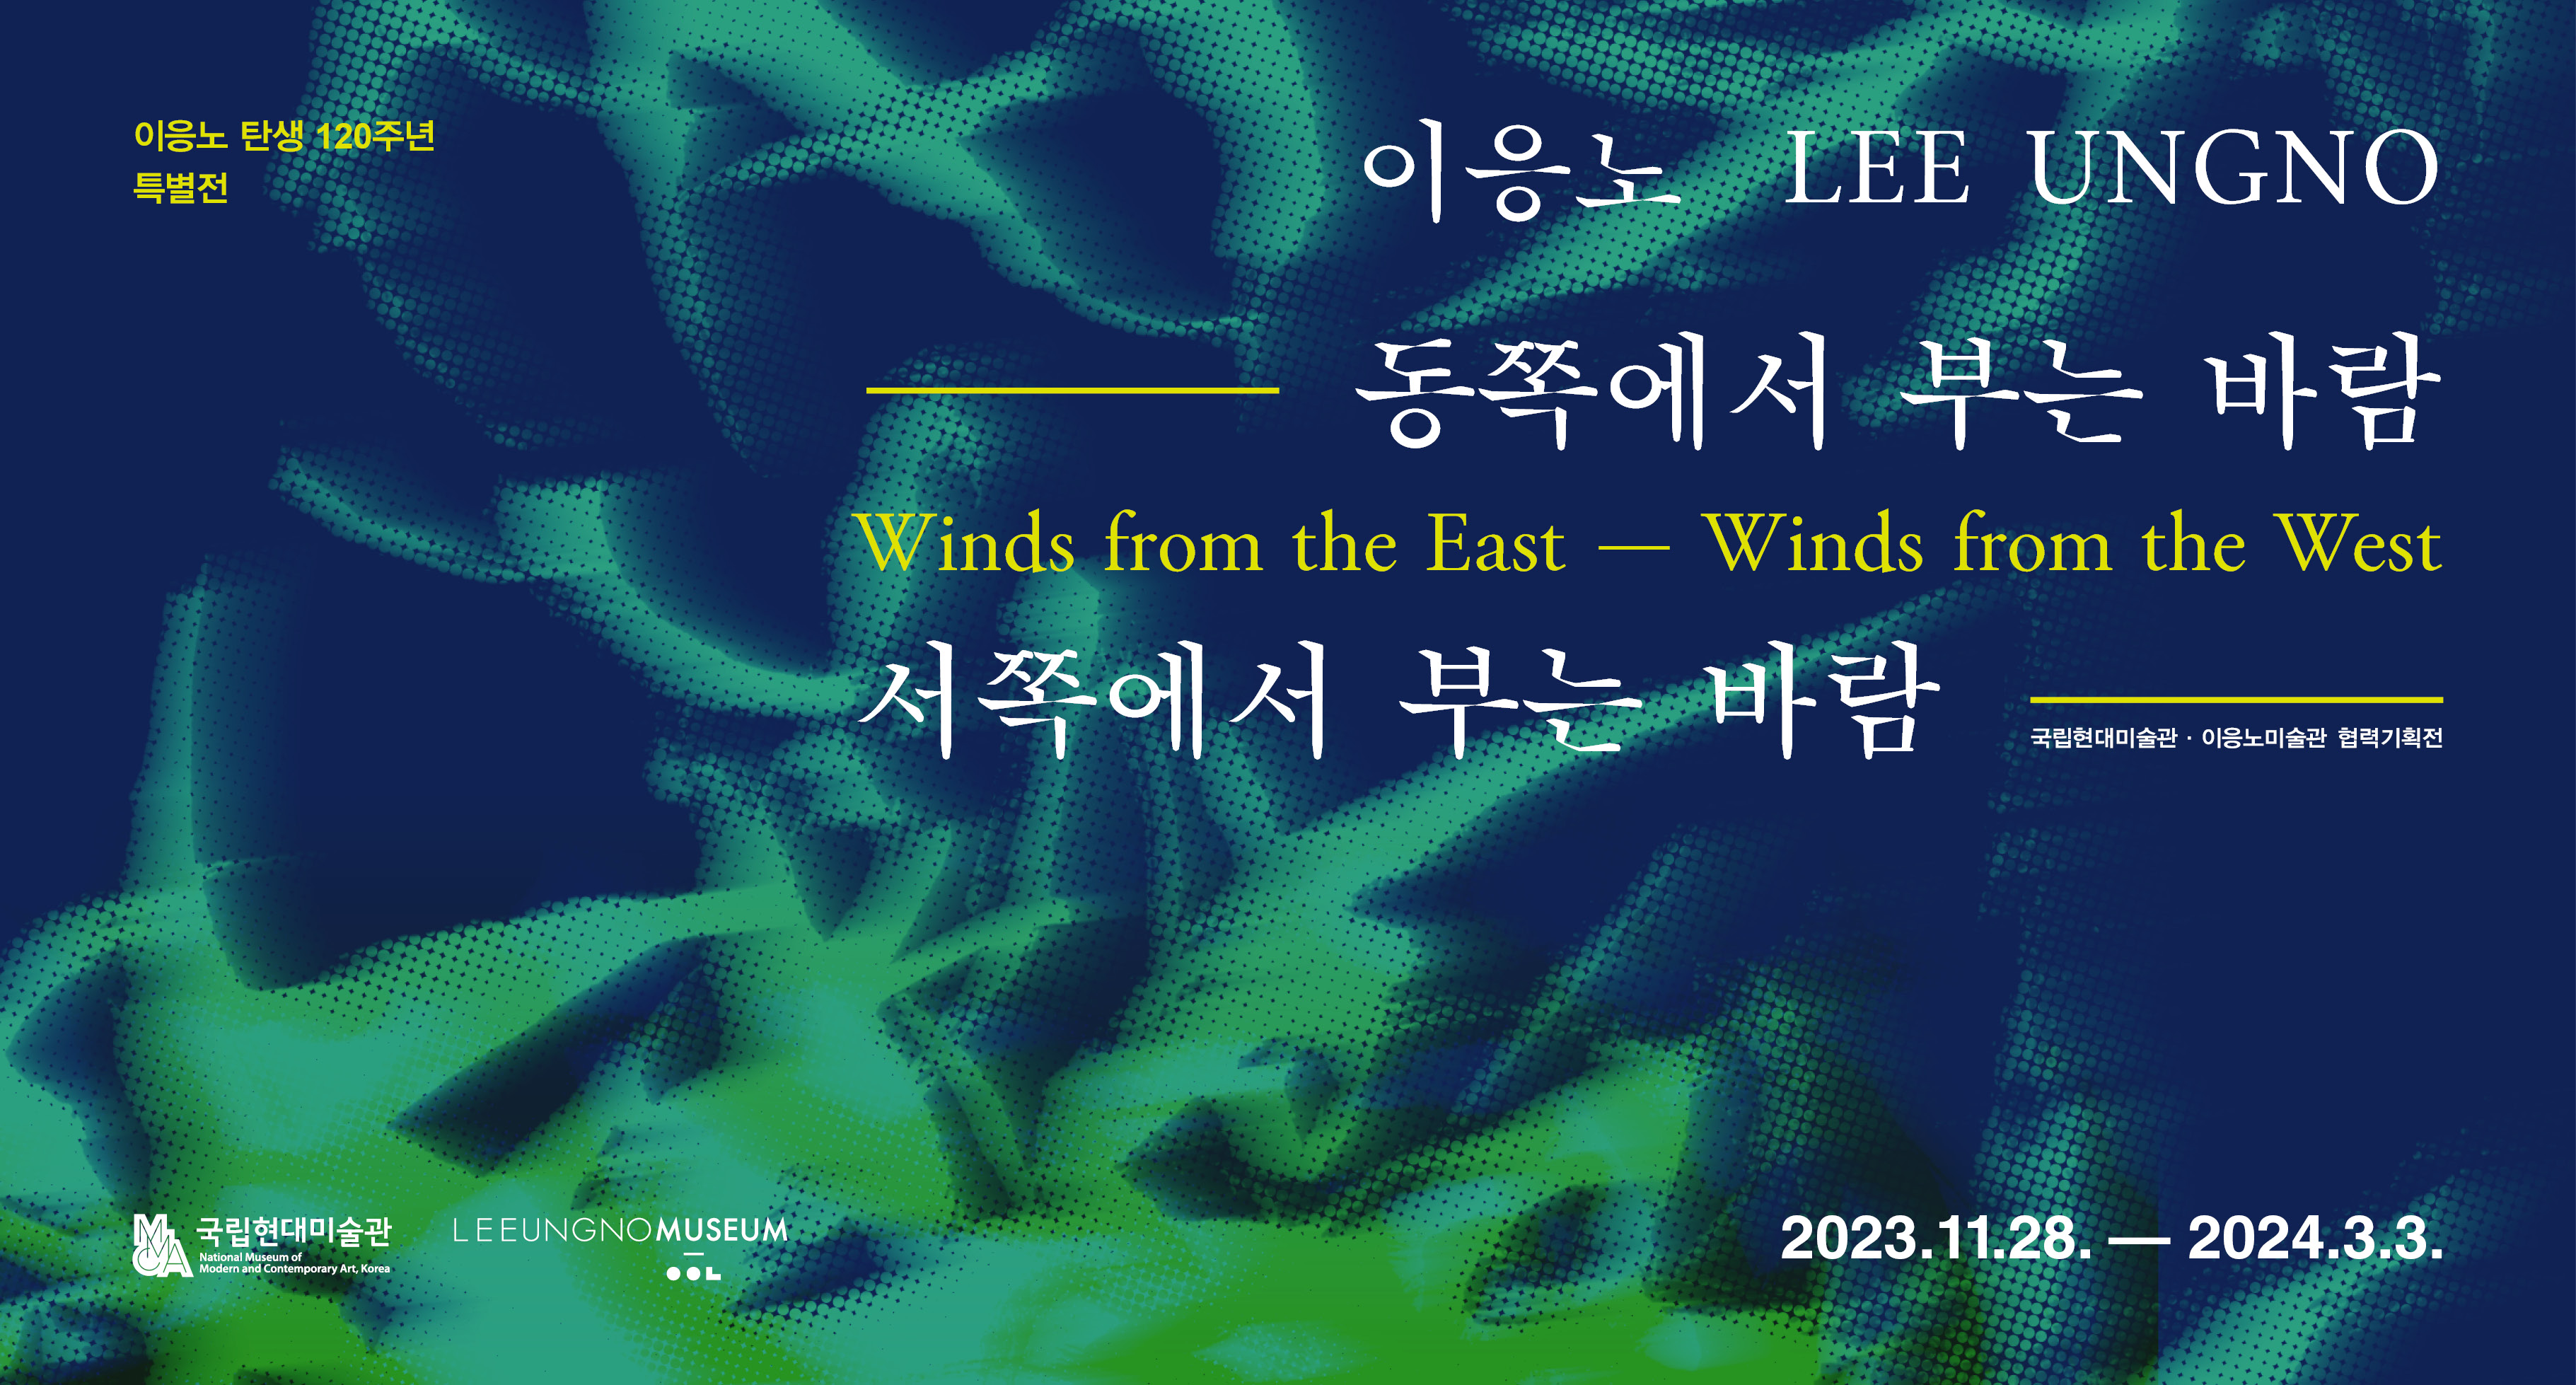 이응노, 동쪽에서 부는 바람, 서쪽에서 부는 바람